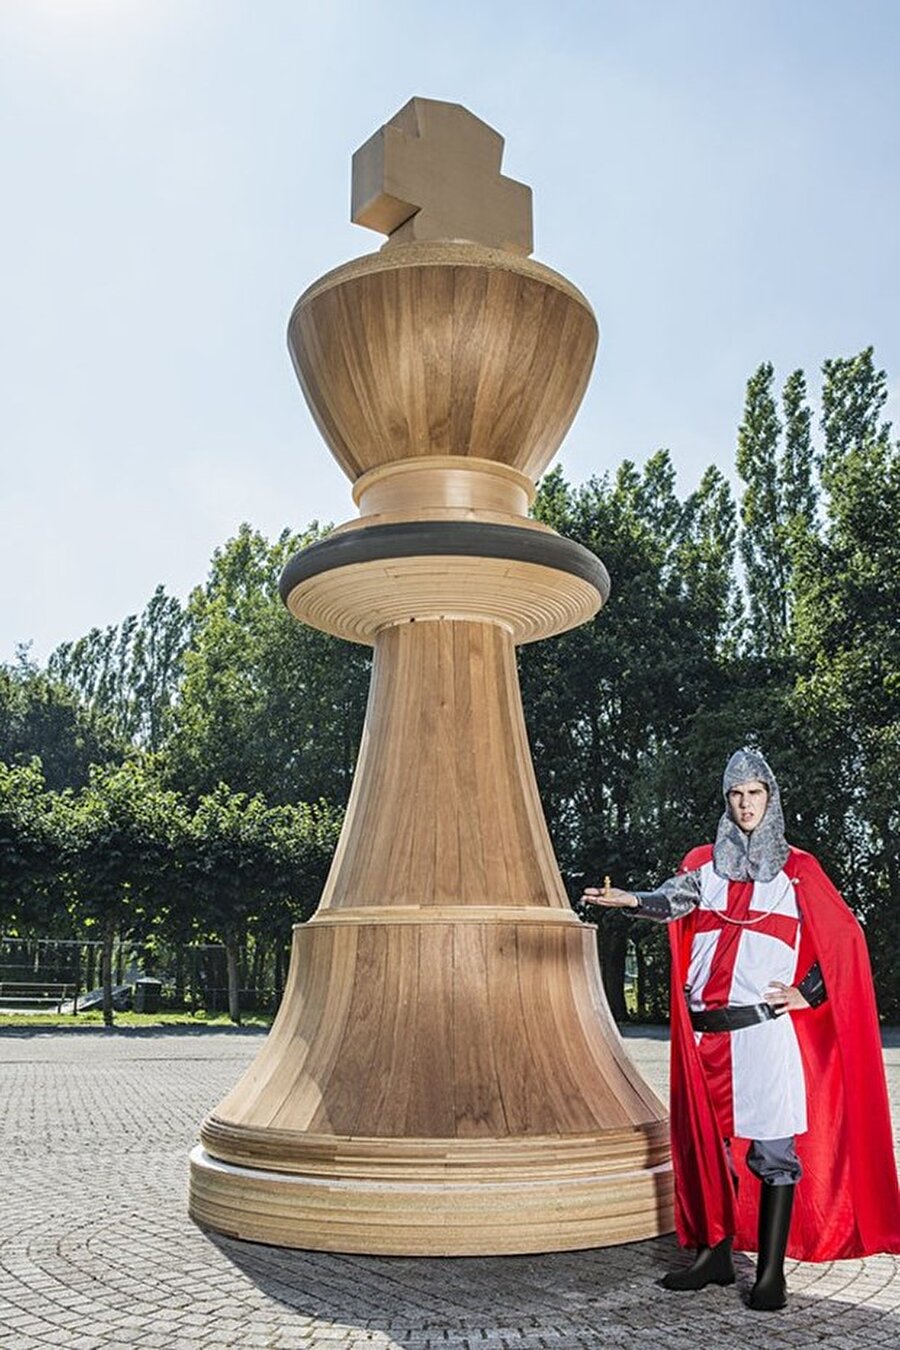 Santranç taşı
Dünyanın en büyük satranç taşı yaklaşık 5 metre uzunluğunda.